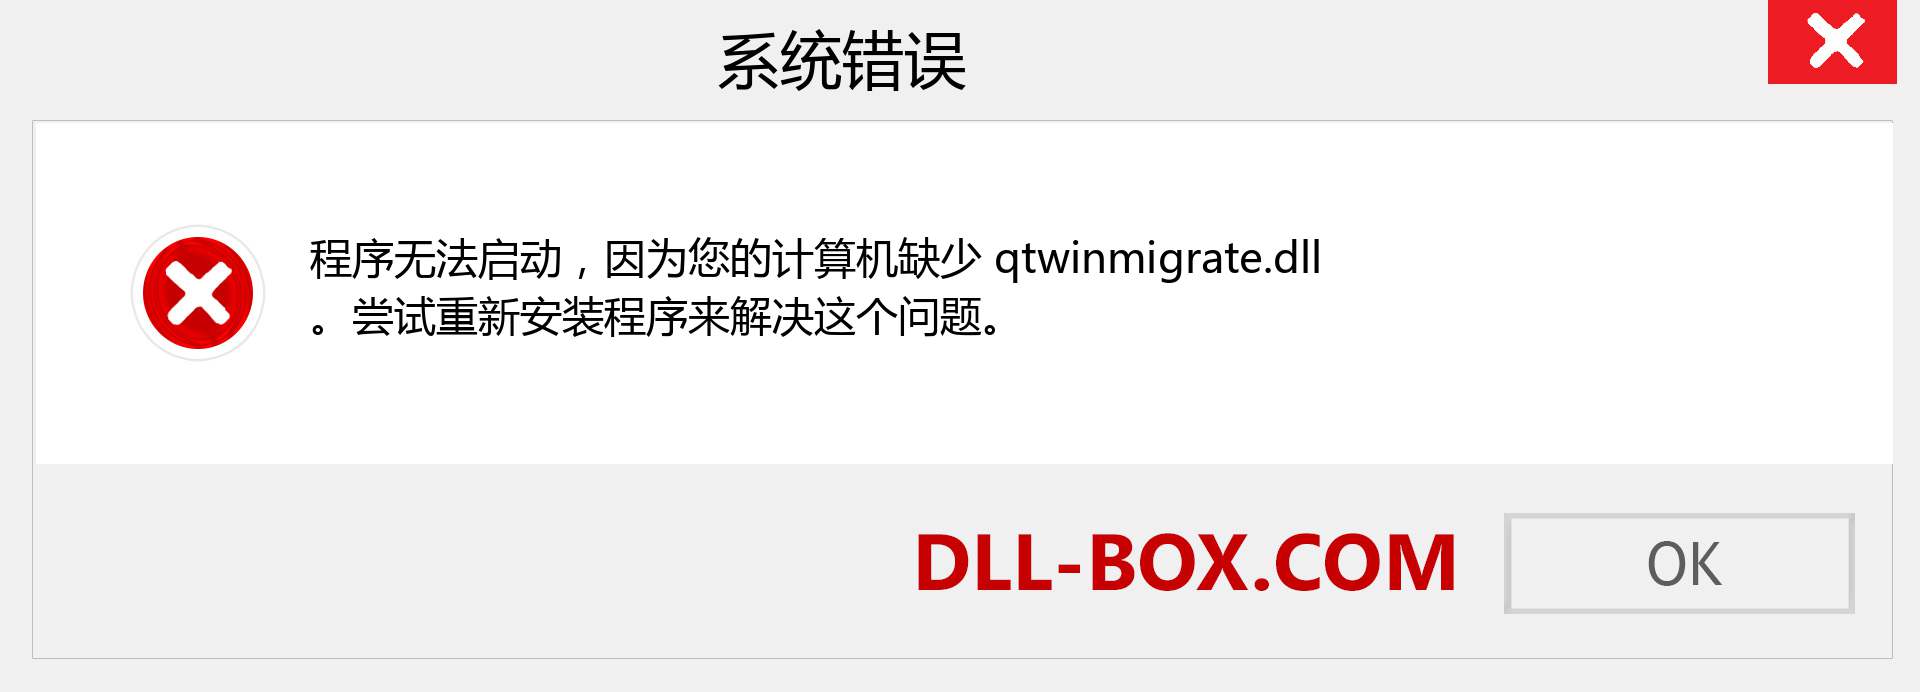 qtwinmigrate.dll 文件丢失？。 适用于 Windows 7、8、10 的下载 - 修复 Windows、照片、图像上的 qtwinmigrate dll 丢失错误